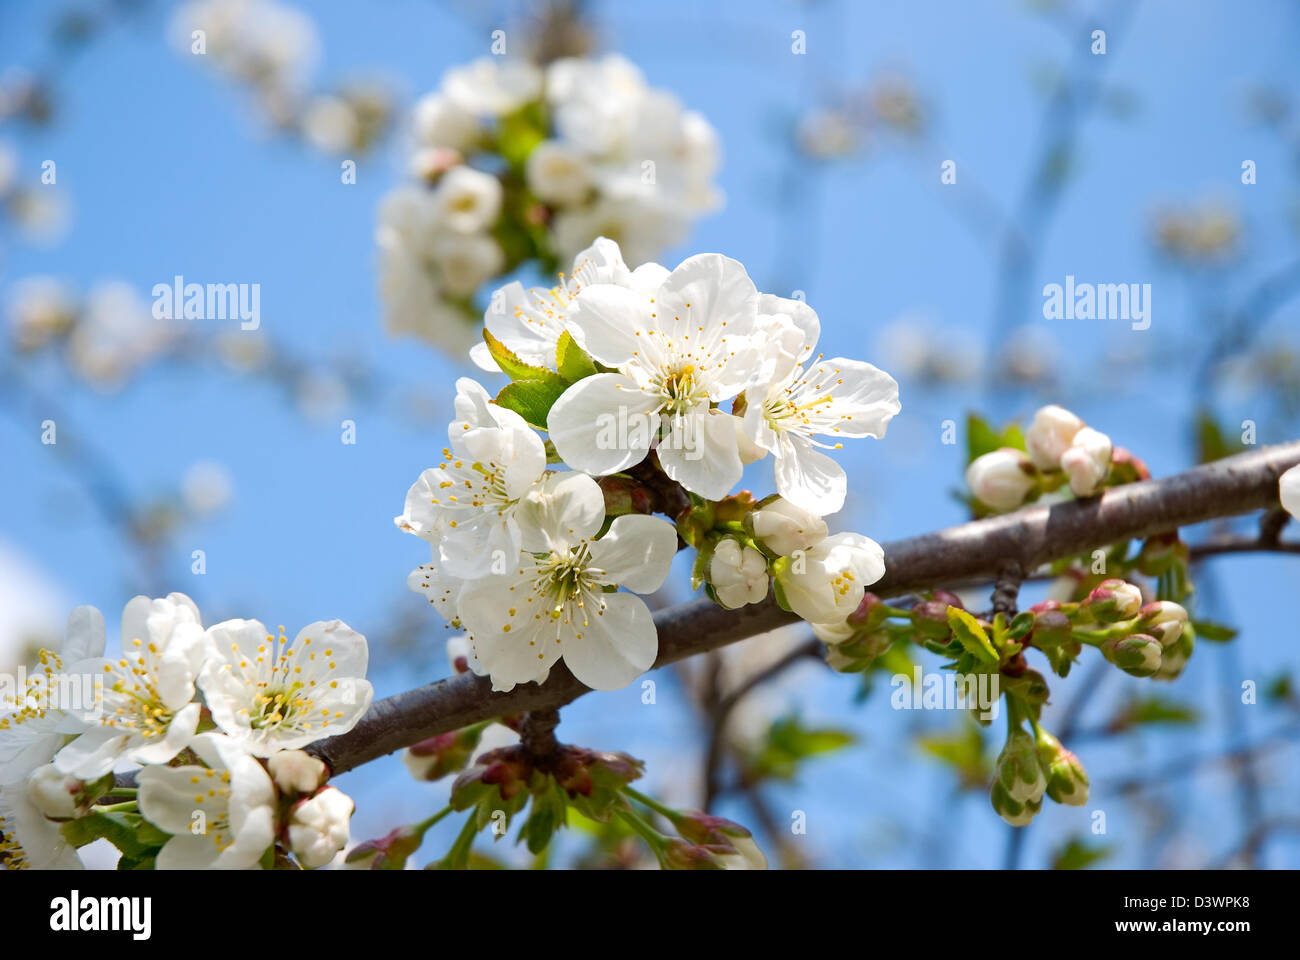 El florecimiento de un árbol de cerezo es fotografiado sobre un fondo de cielo azul Foto de stock